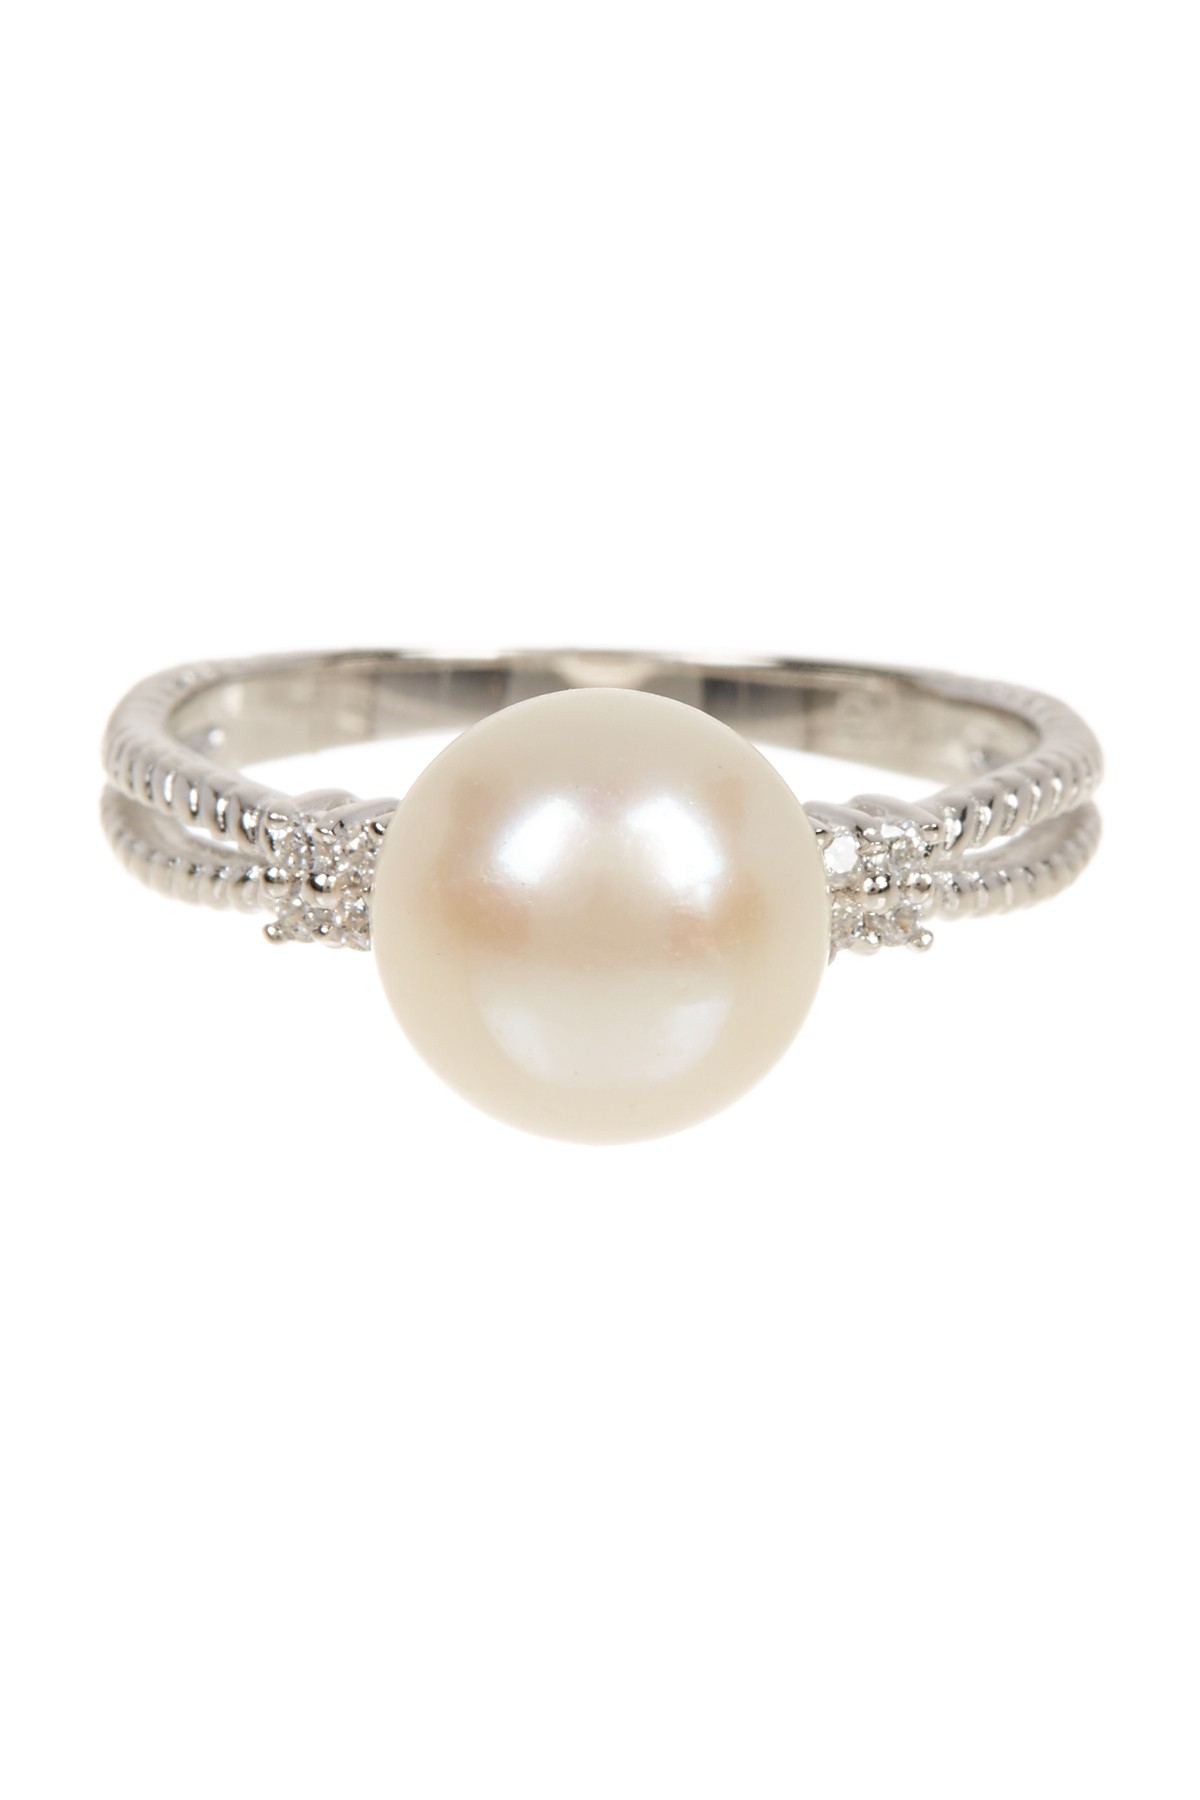 Ребристое кольцо с белым пресноводным жемчугом 8,5-9 мм Splendid Pearls